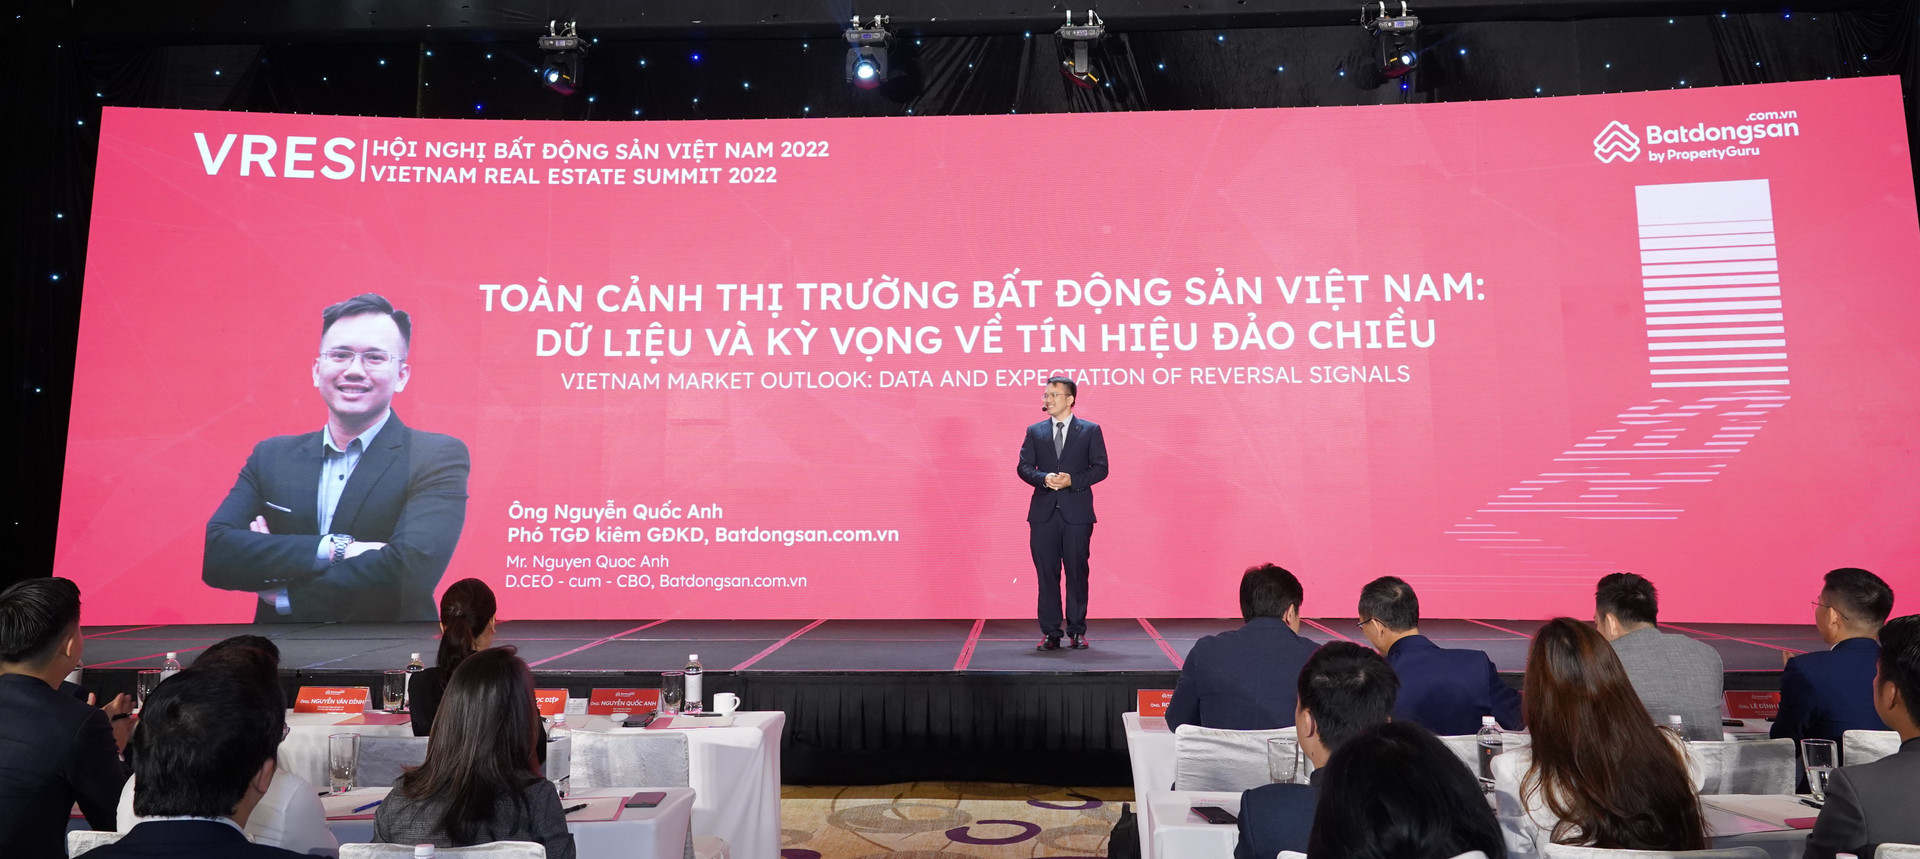 'Soi' chu kỳ 9 năm của BĐS Việt Nam, chuyên gia chỉ ra 3 chỉ báo thị trường sắp có tín hiệu đảo chiều - Ảnh 3.